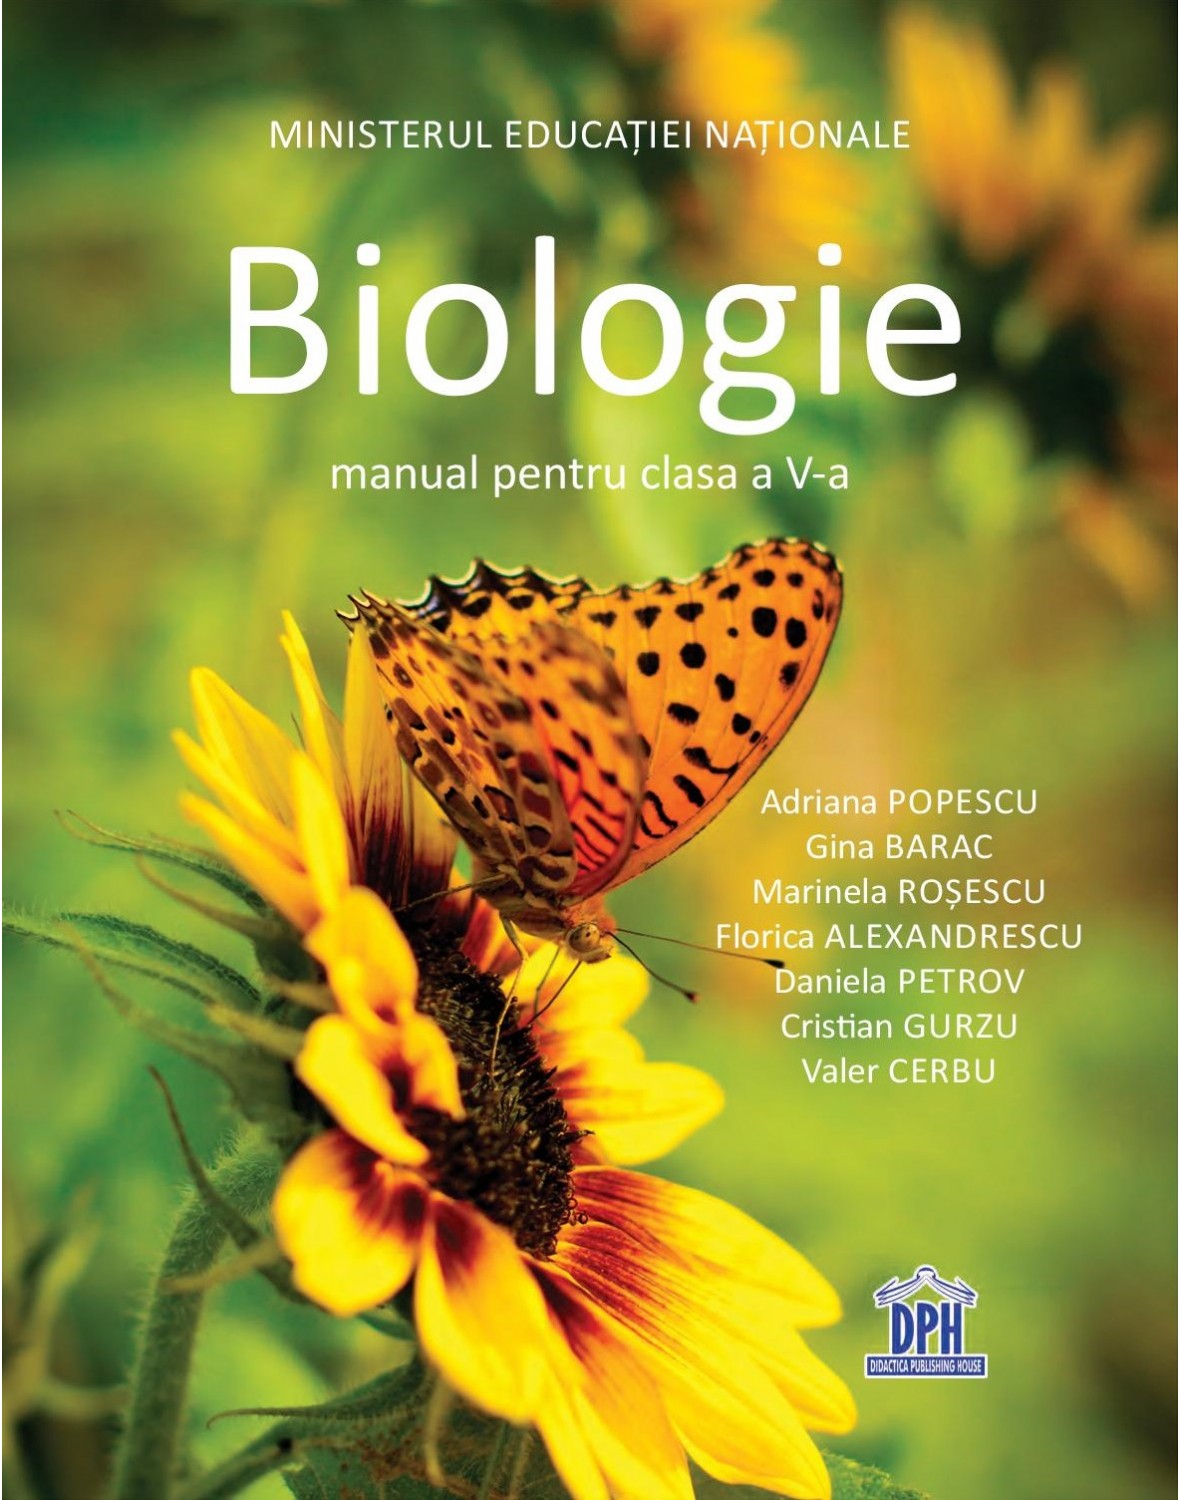 Biologie - Manual pentru clasa a V-a | Adriana Popescu, Gina Barac, Marinela Rosescu, Florica Alexandrescu, Daniela Petrov, Cristian Gurzu, Valer Cerbu